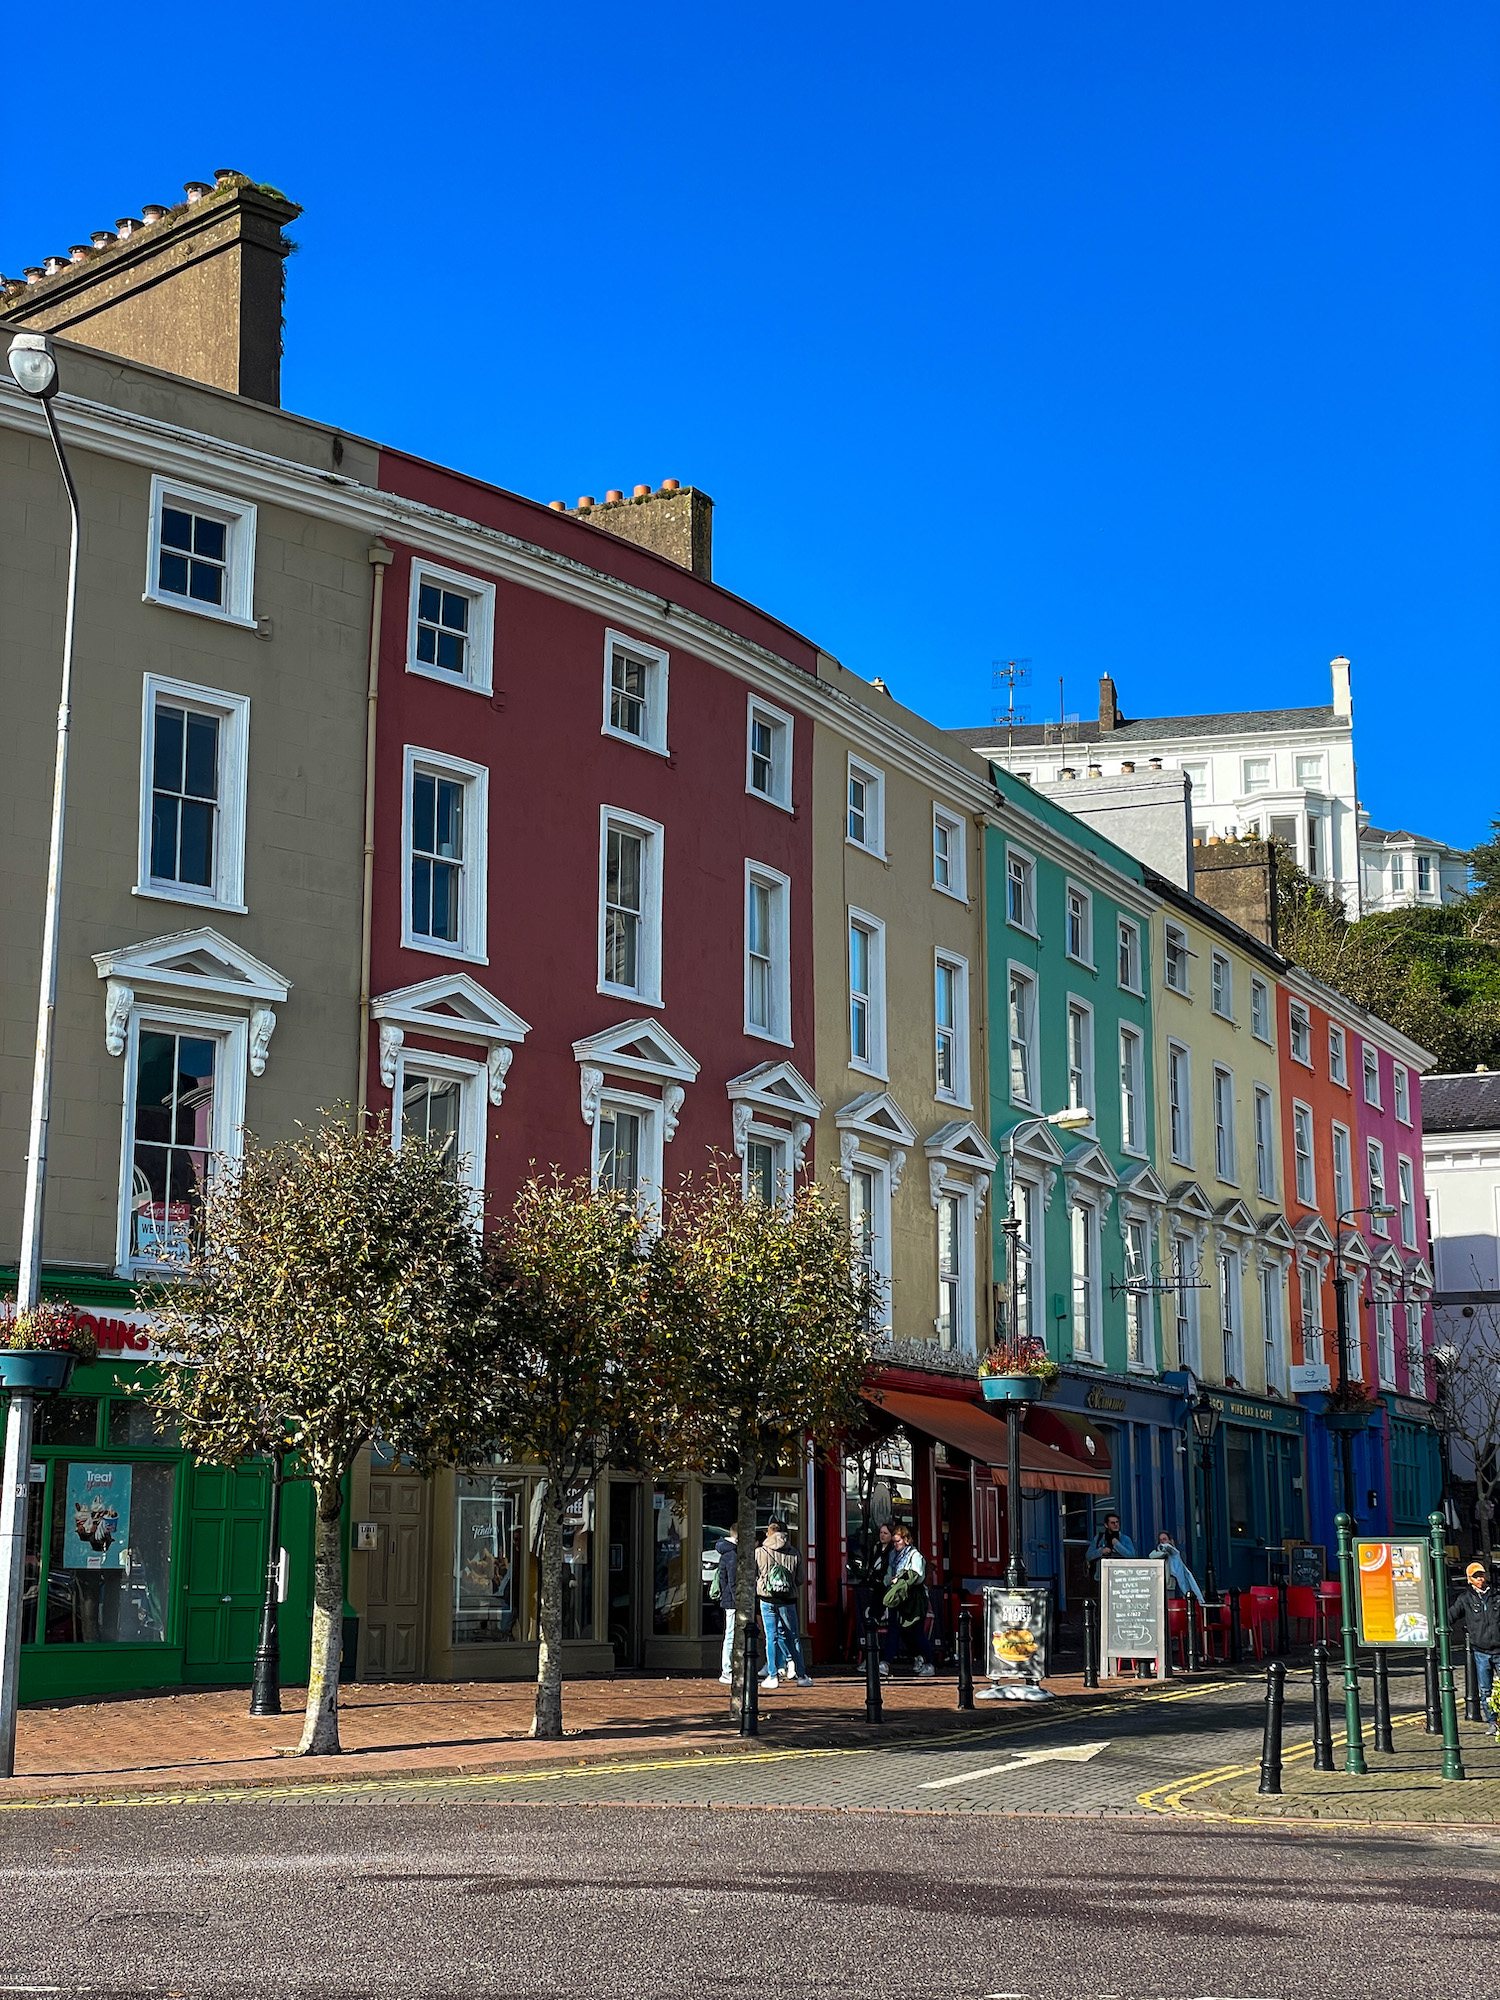 De kleurrijke huizen zijn de echte eyecatchers van Cobh, dat op slechts een half uurtje rijden van Cork ligt.